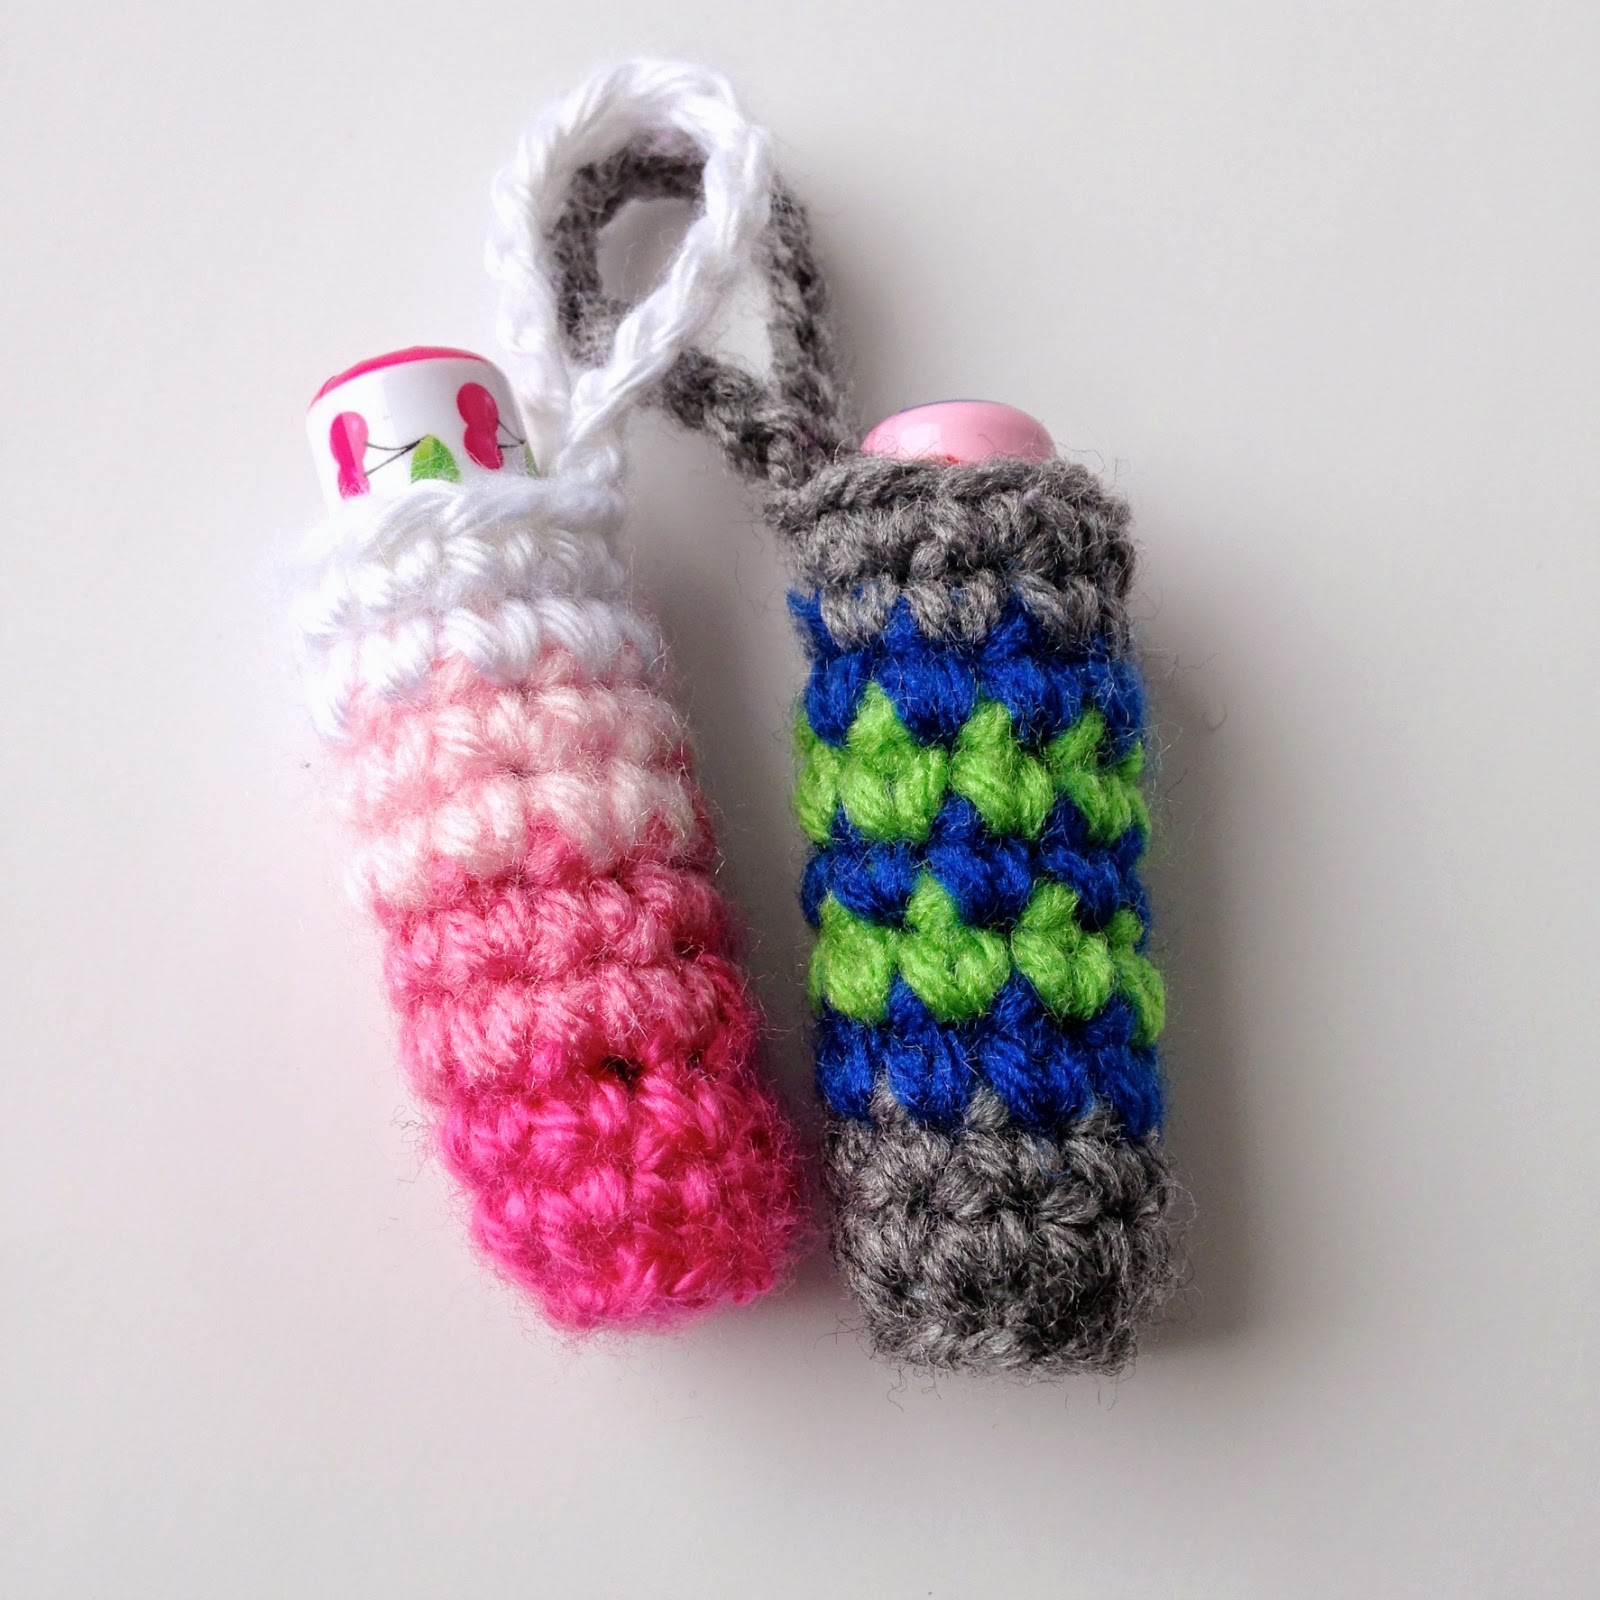 5 Little Monsters: Free Crochet Patterns